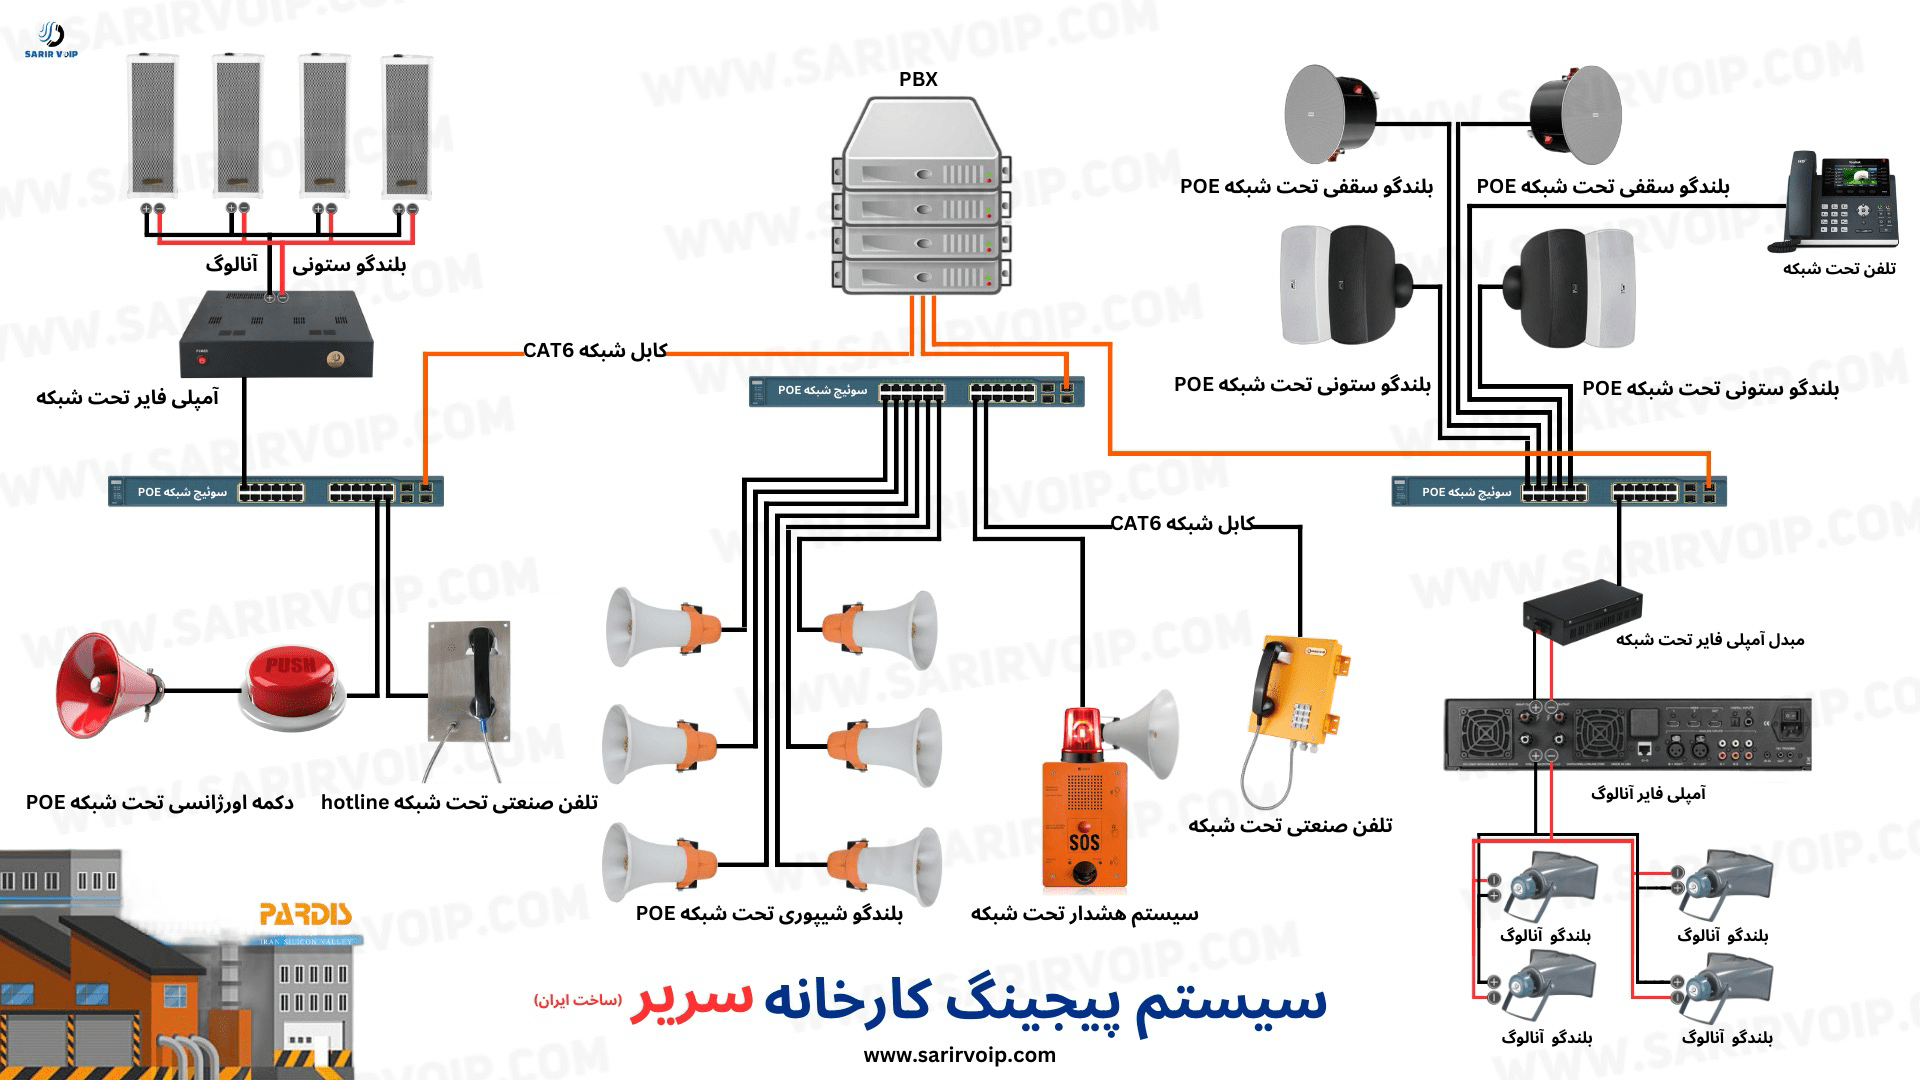 ساختار اجزای سیستم پیجینگ کارخانه